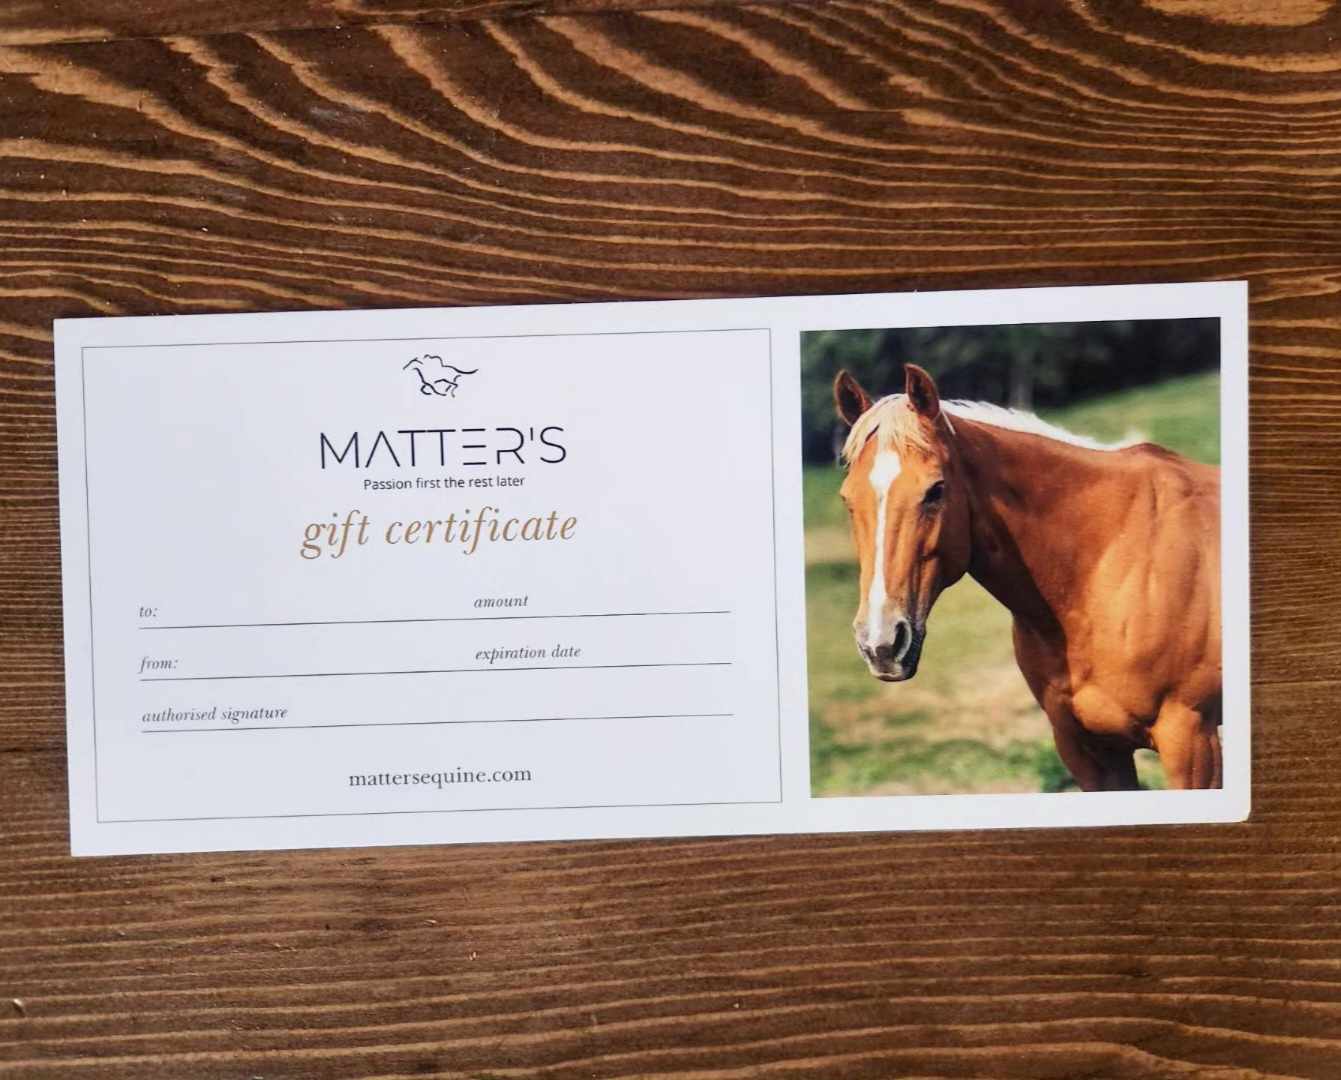 z. Matter's gift certificate